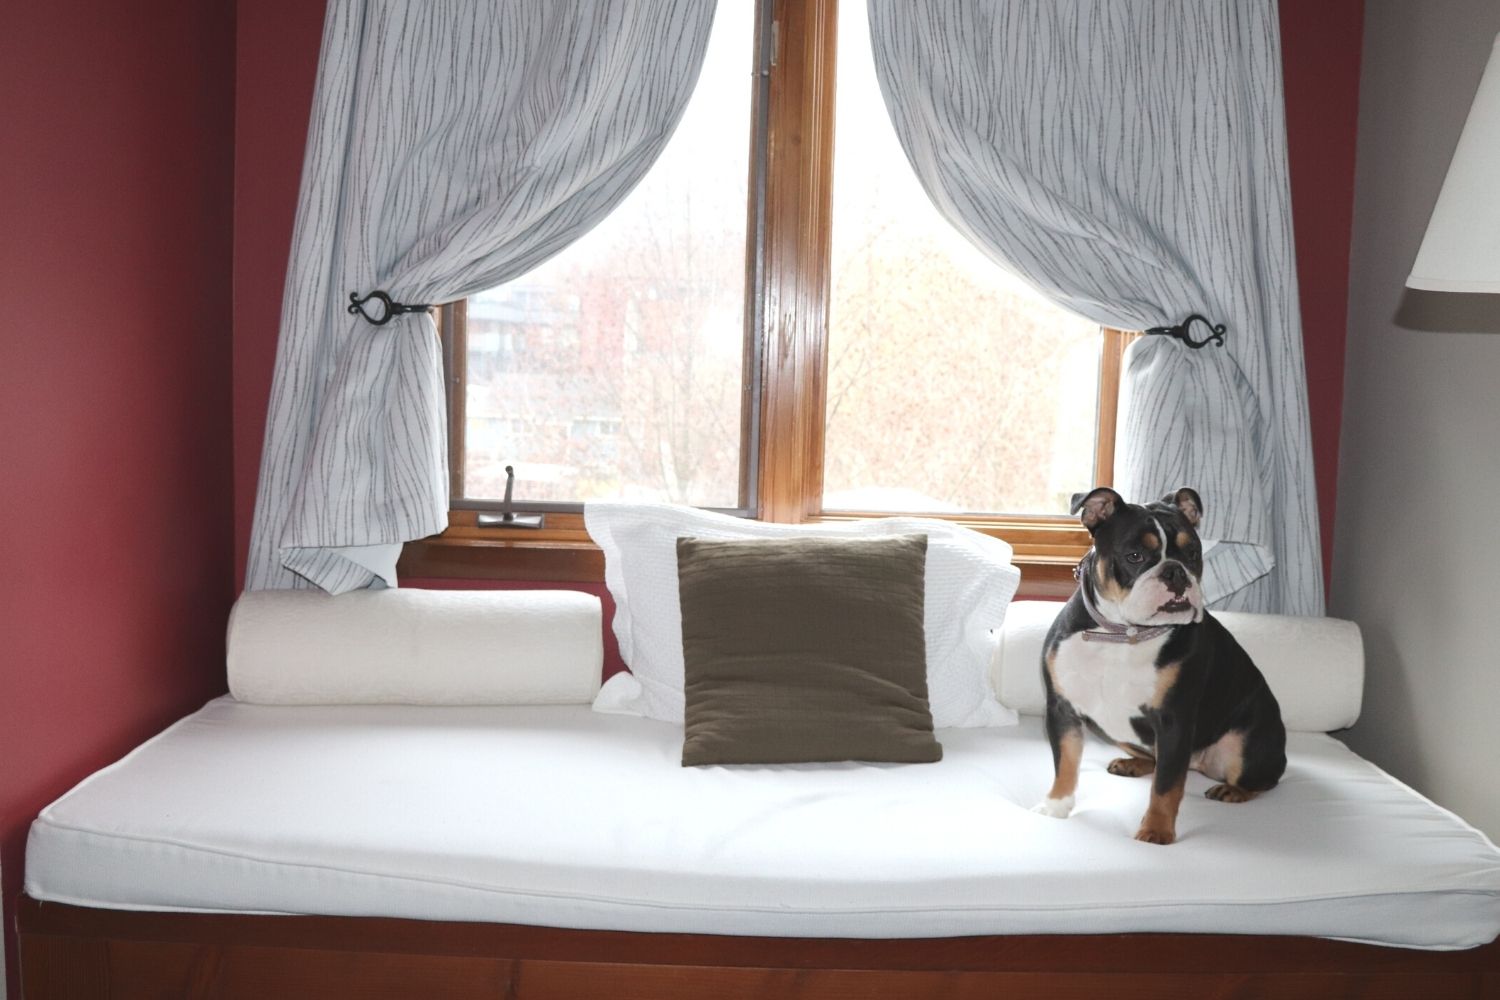 Squamish's Dog Friendly Hotels Image